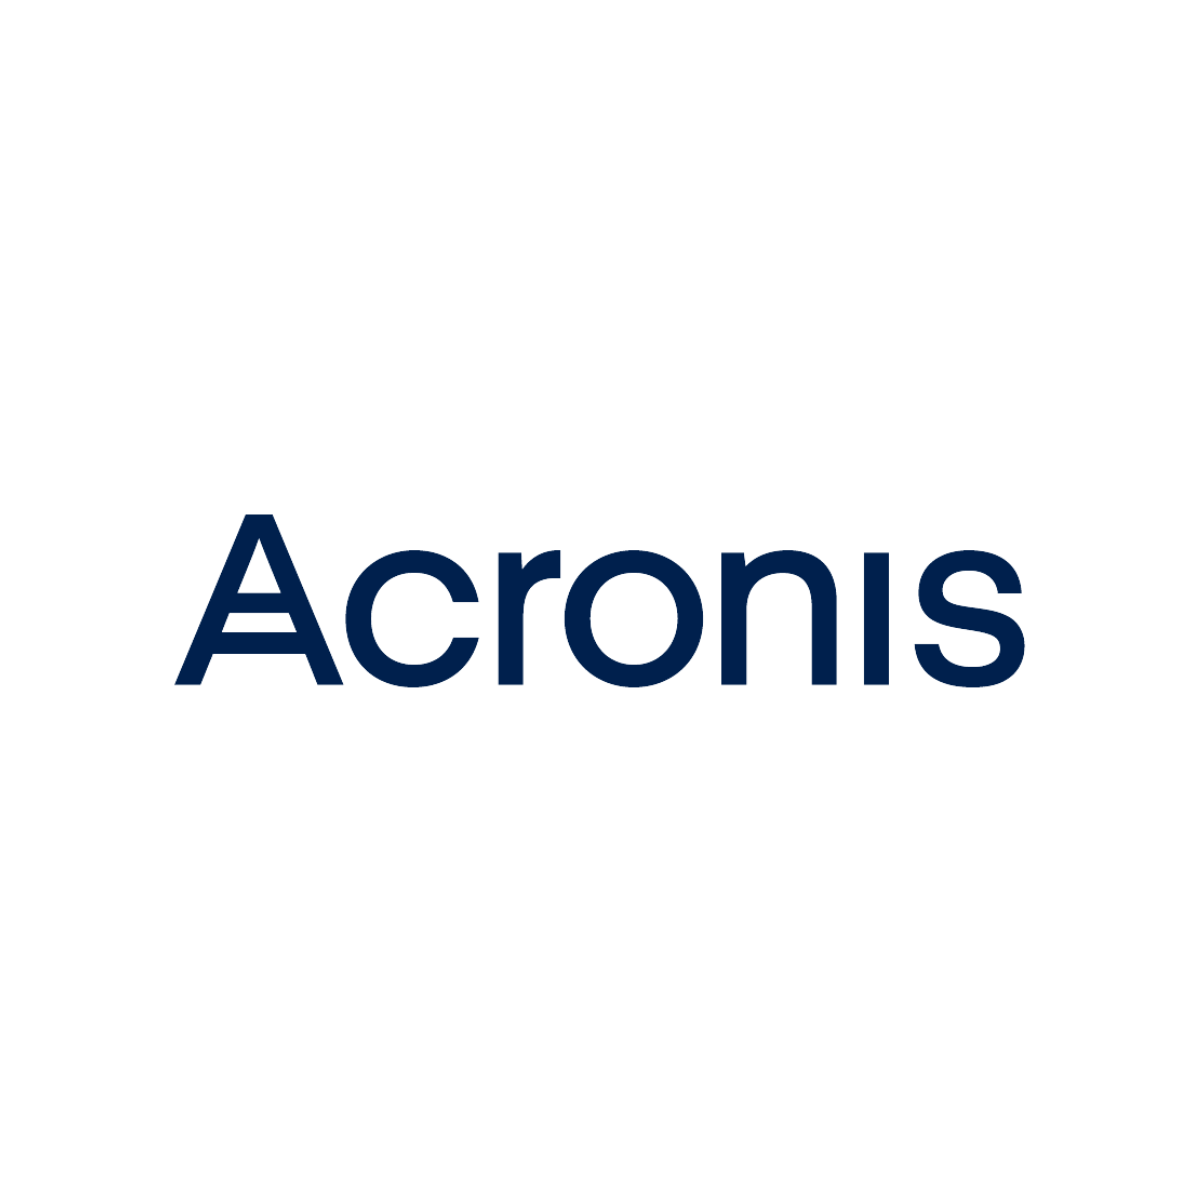 Logos-SERP-Conf-Acronis